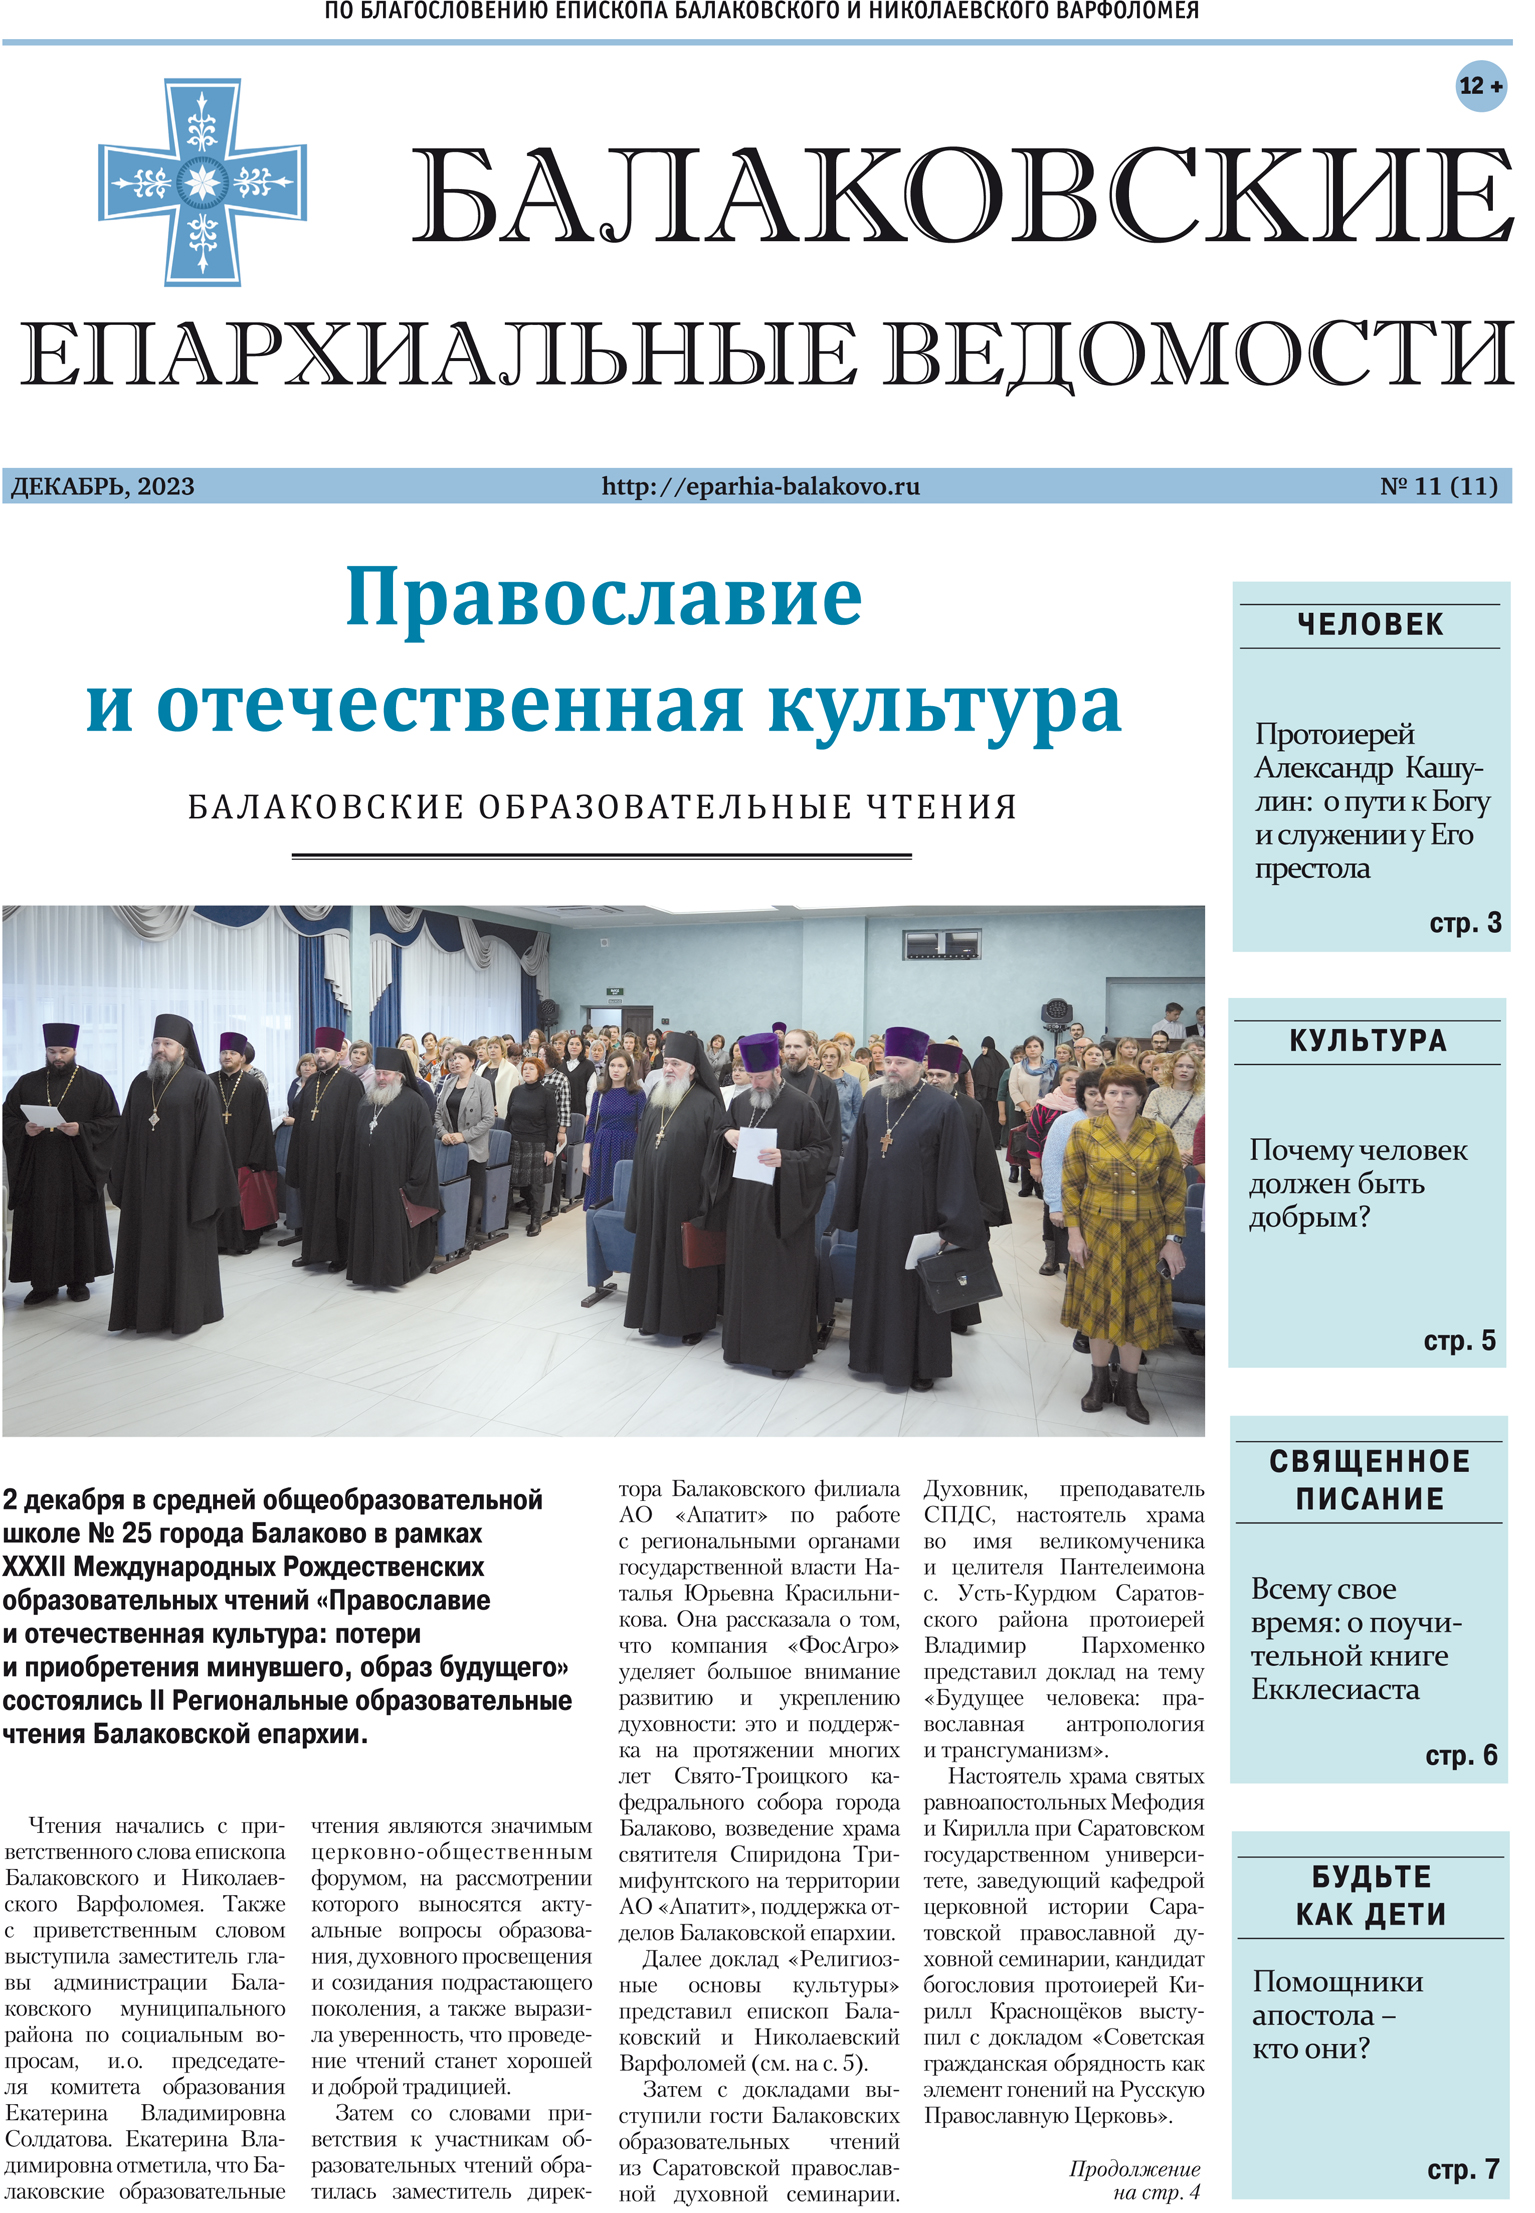 Вышел новый выпуск газеты «Балаковские епархиальные ведомости»